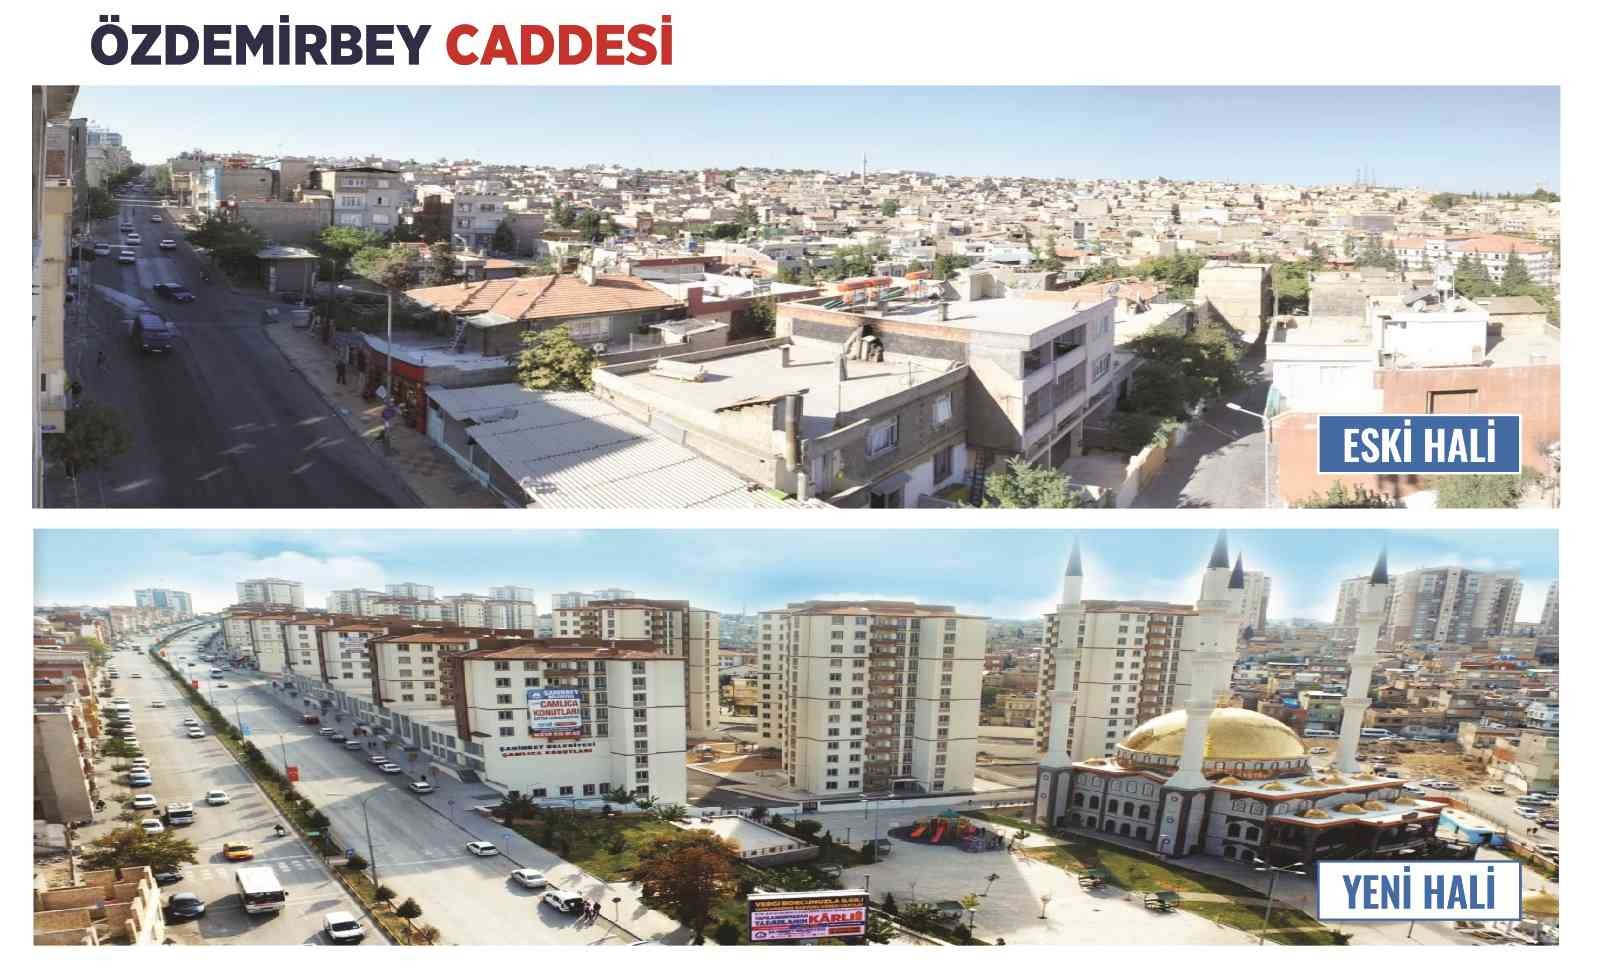 Şahinbey’in çehresi değişiyor #gaziantep